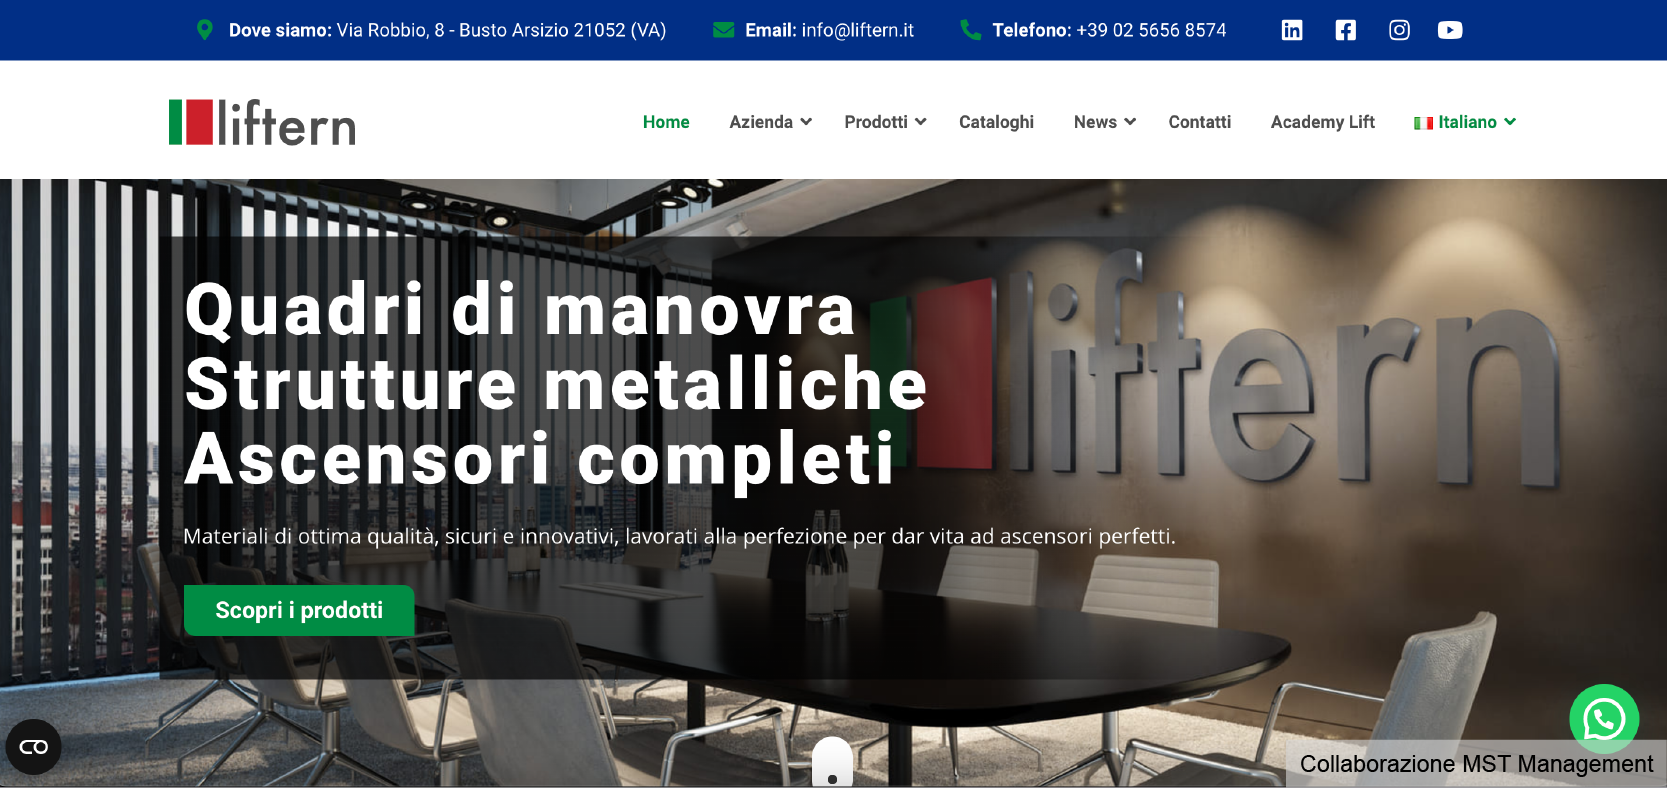 Screen del sito Liftern Italia